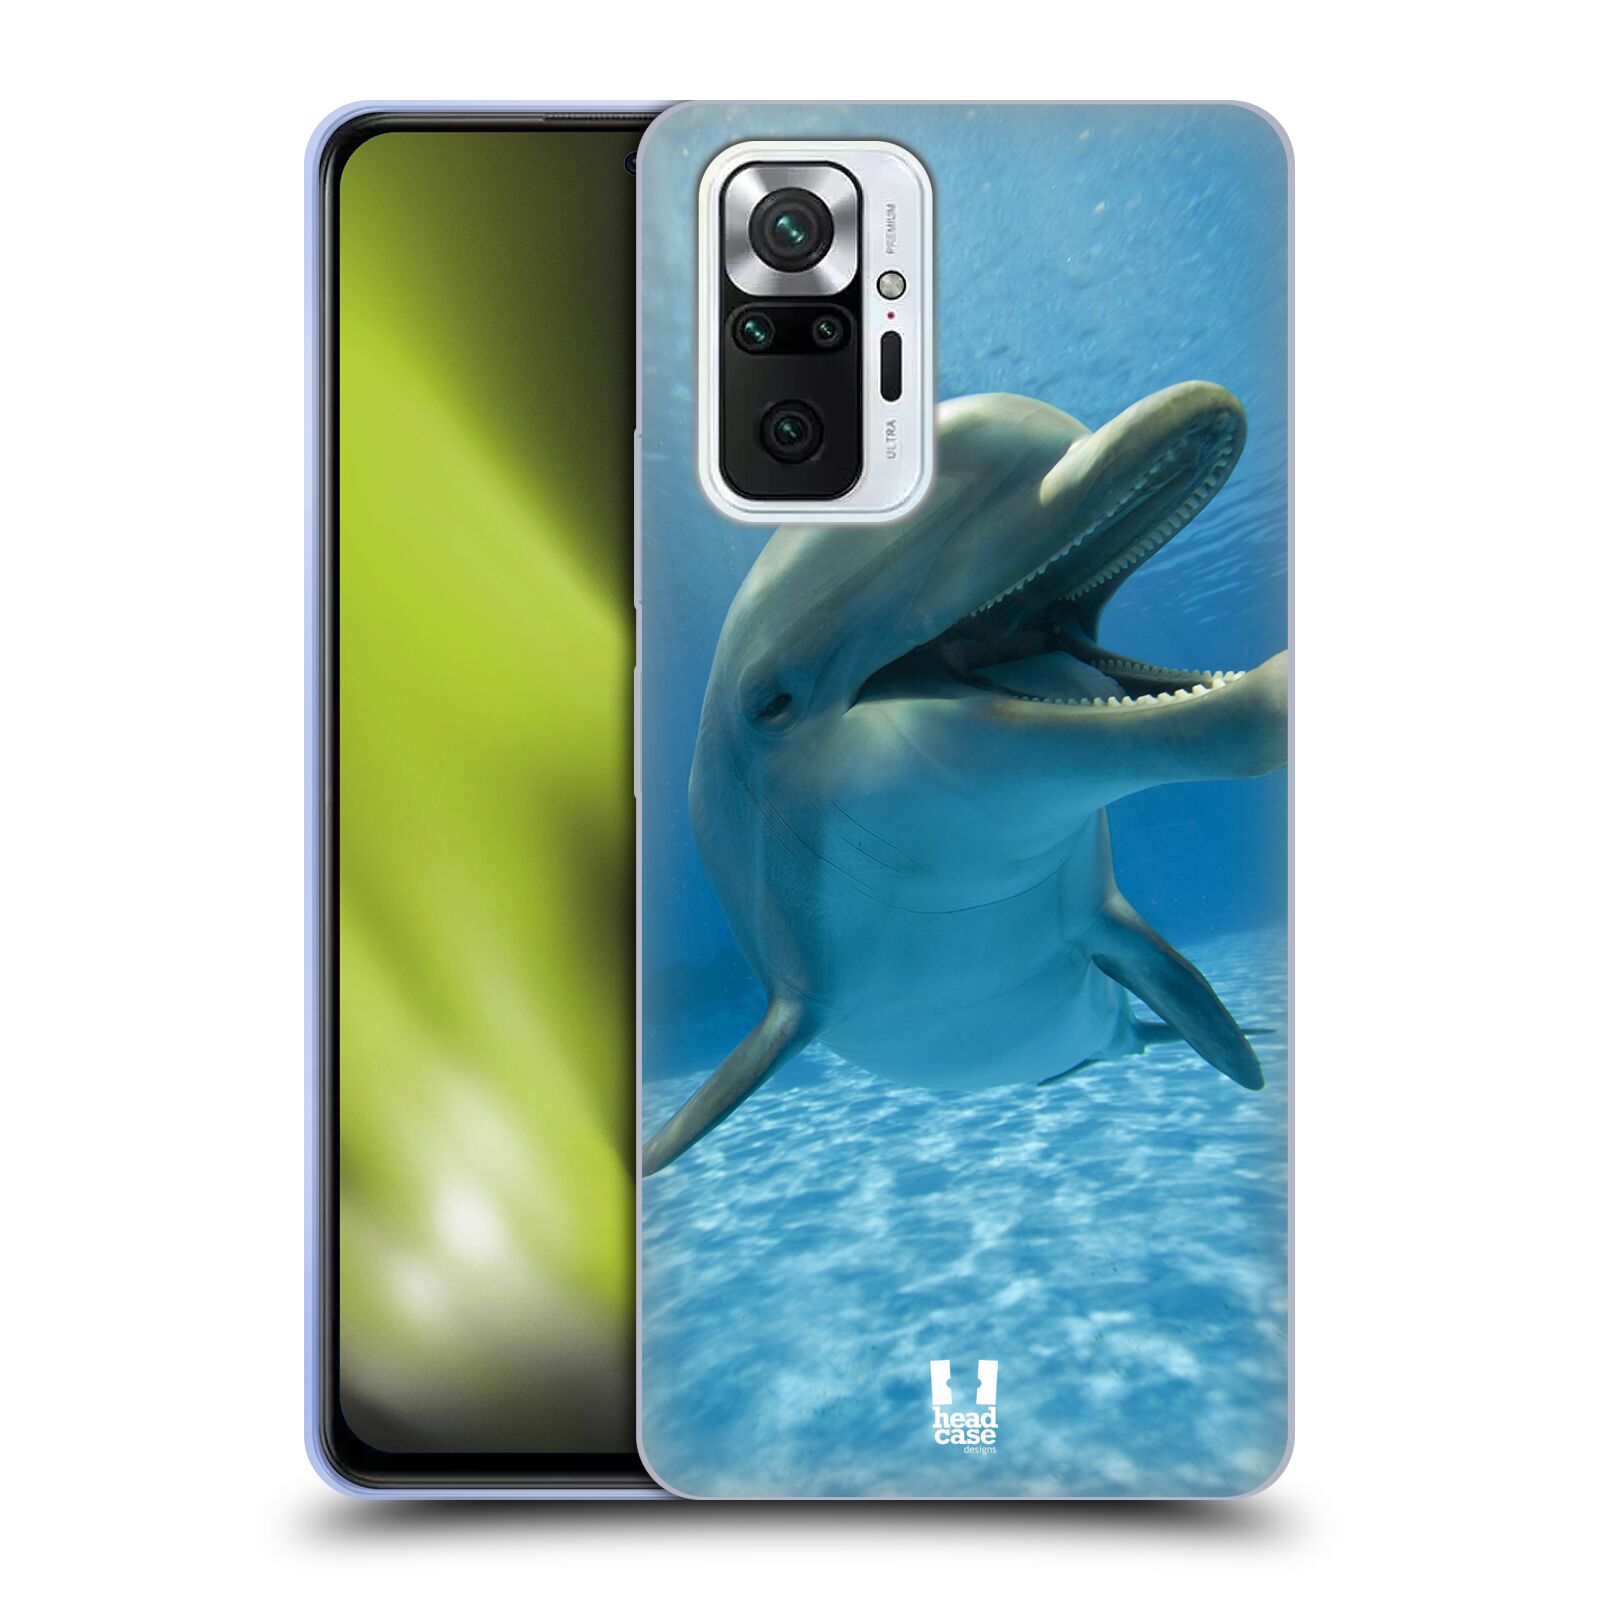 Zadní obal pro mobil Xiaomi Redmi Note 10 PRO - HEAD CASE - Svět zvířat delfín v moři